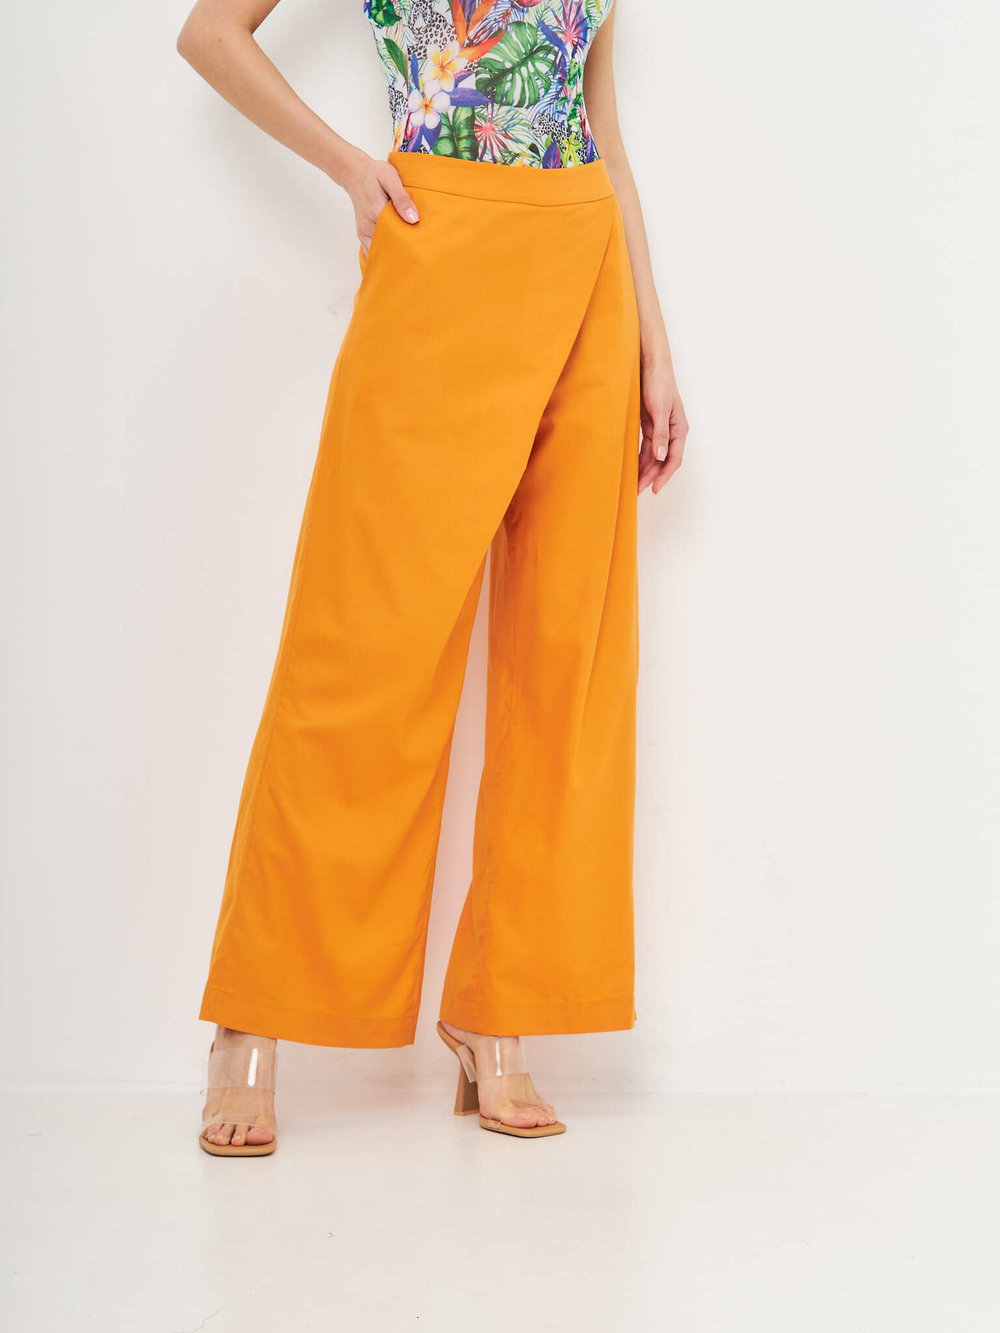 Женские брюки на запах оранжевые